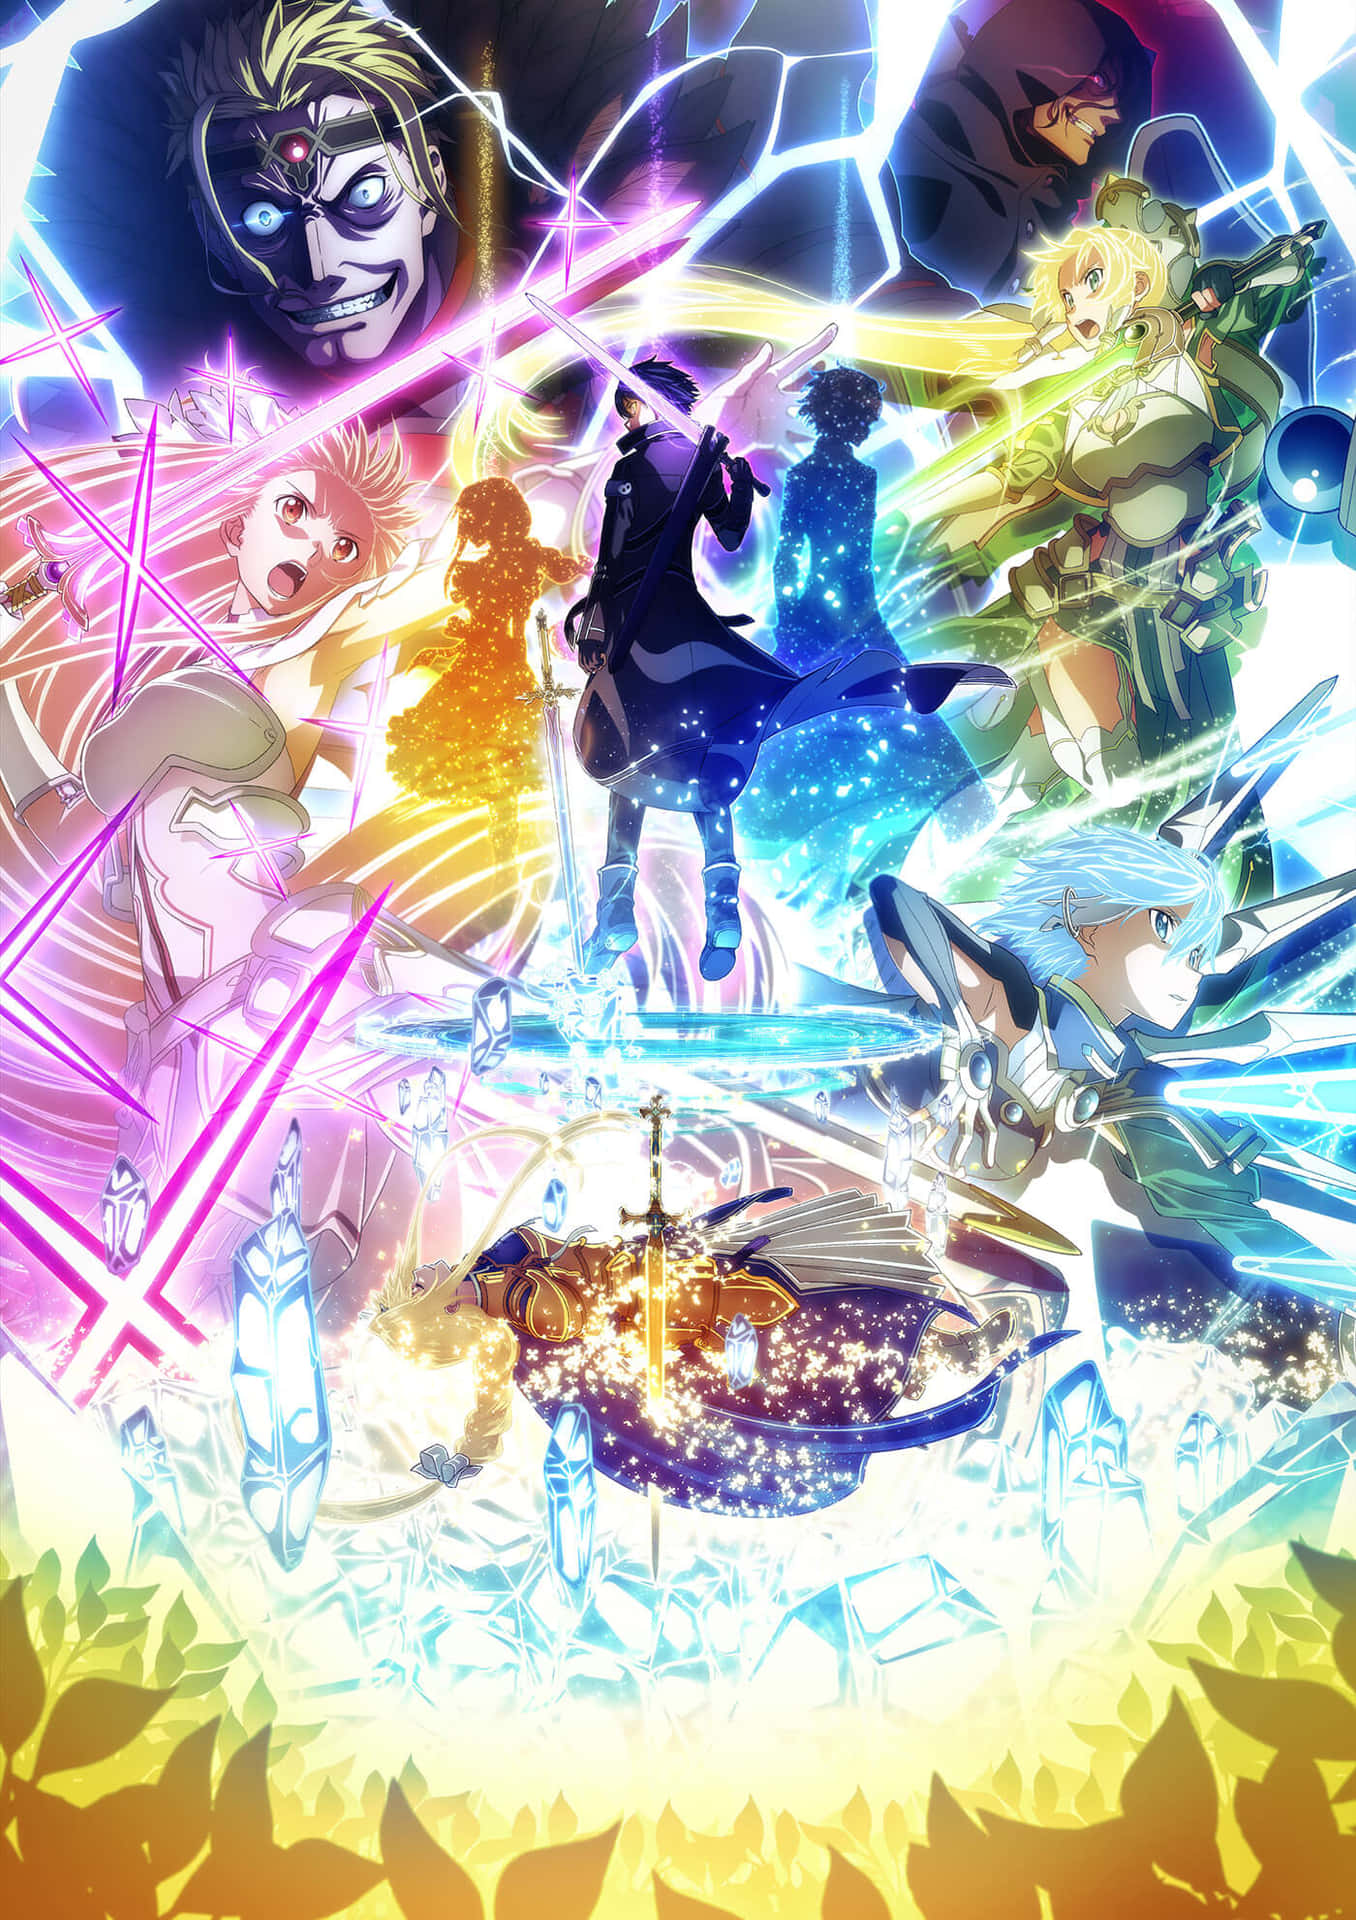 The legendary anime series Sword Art Online